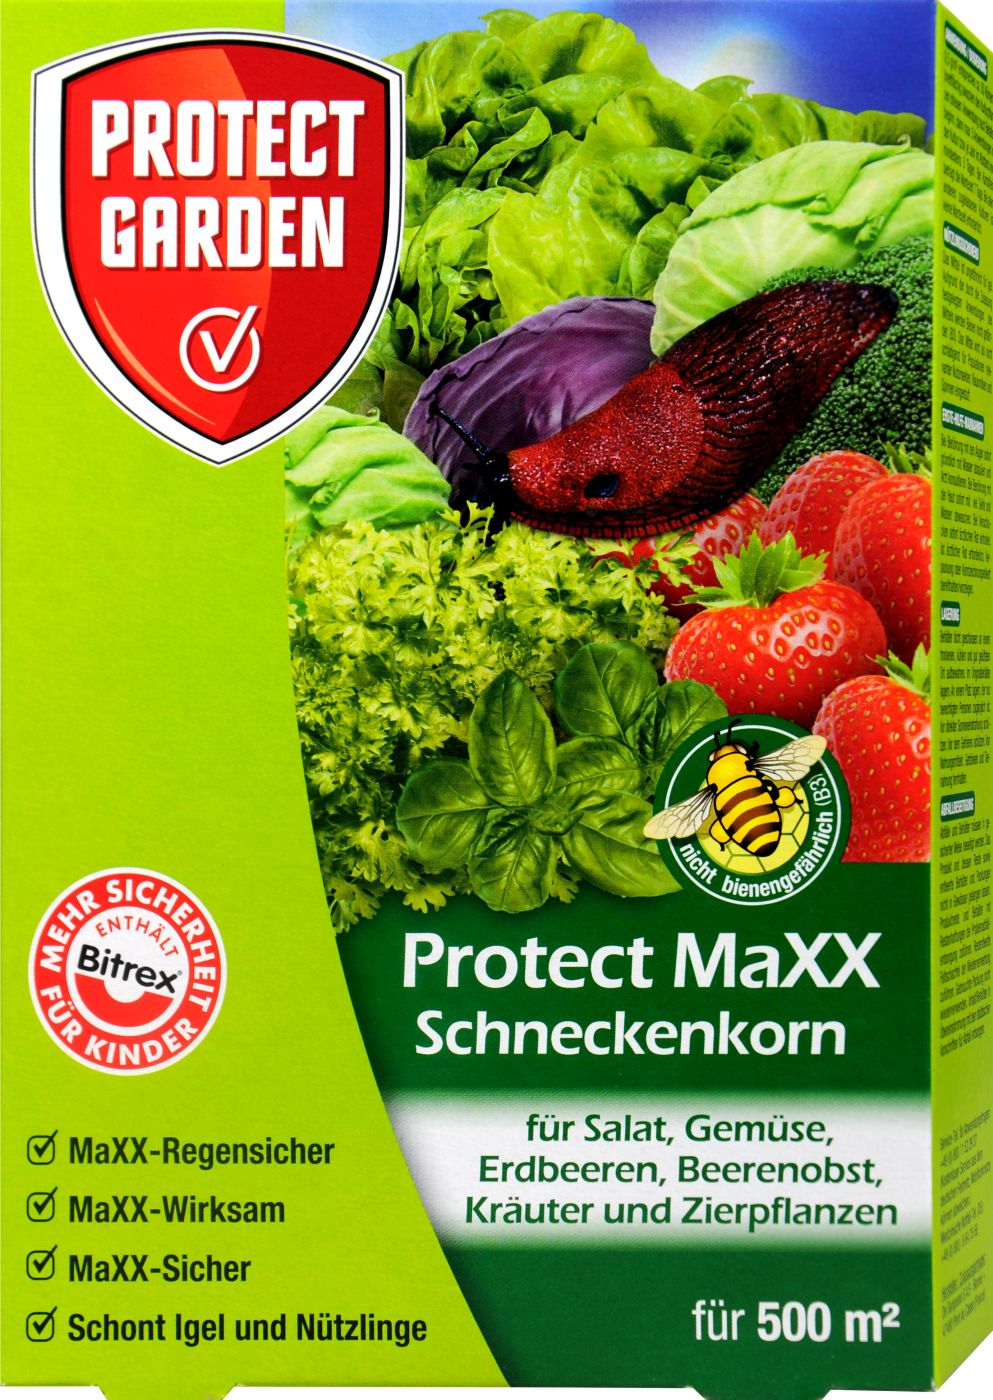 Protect Garden Schneckenkorn Protect Maxx - 250 g